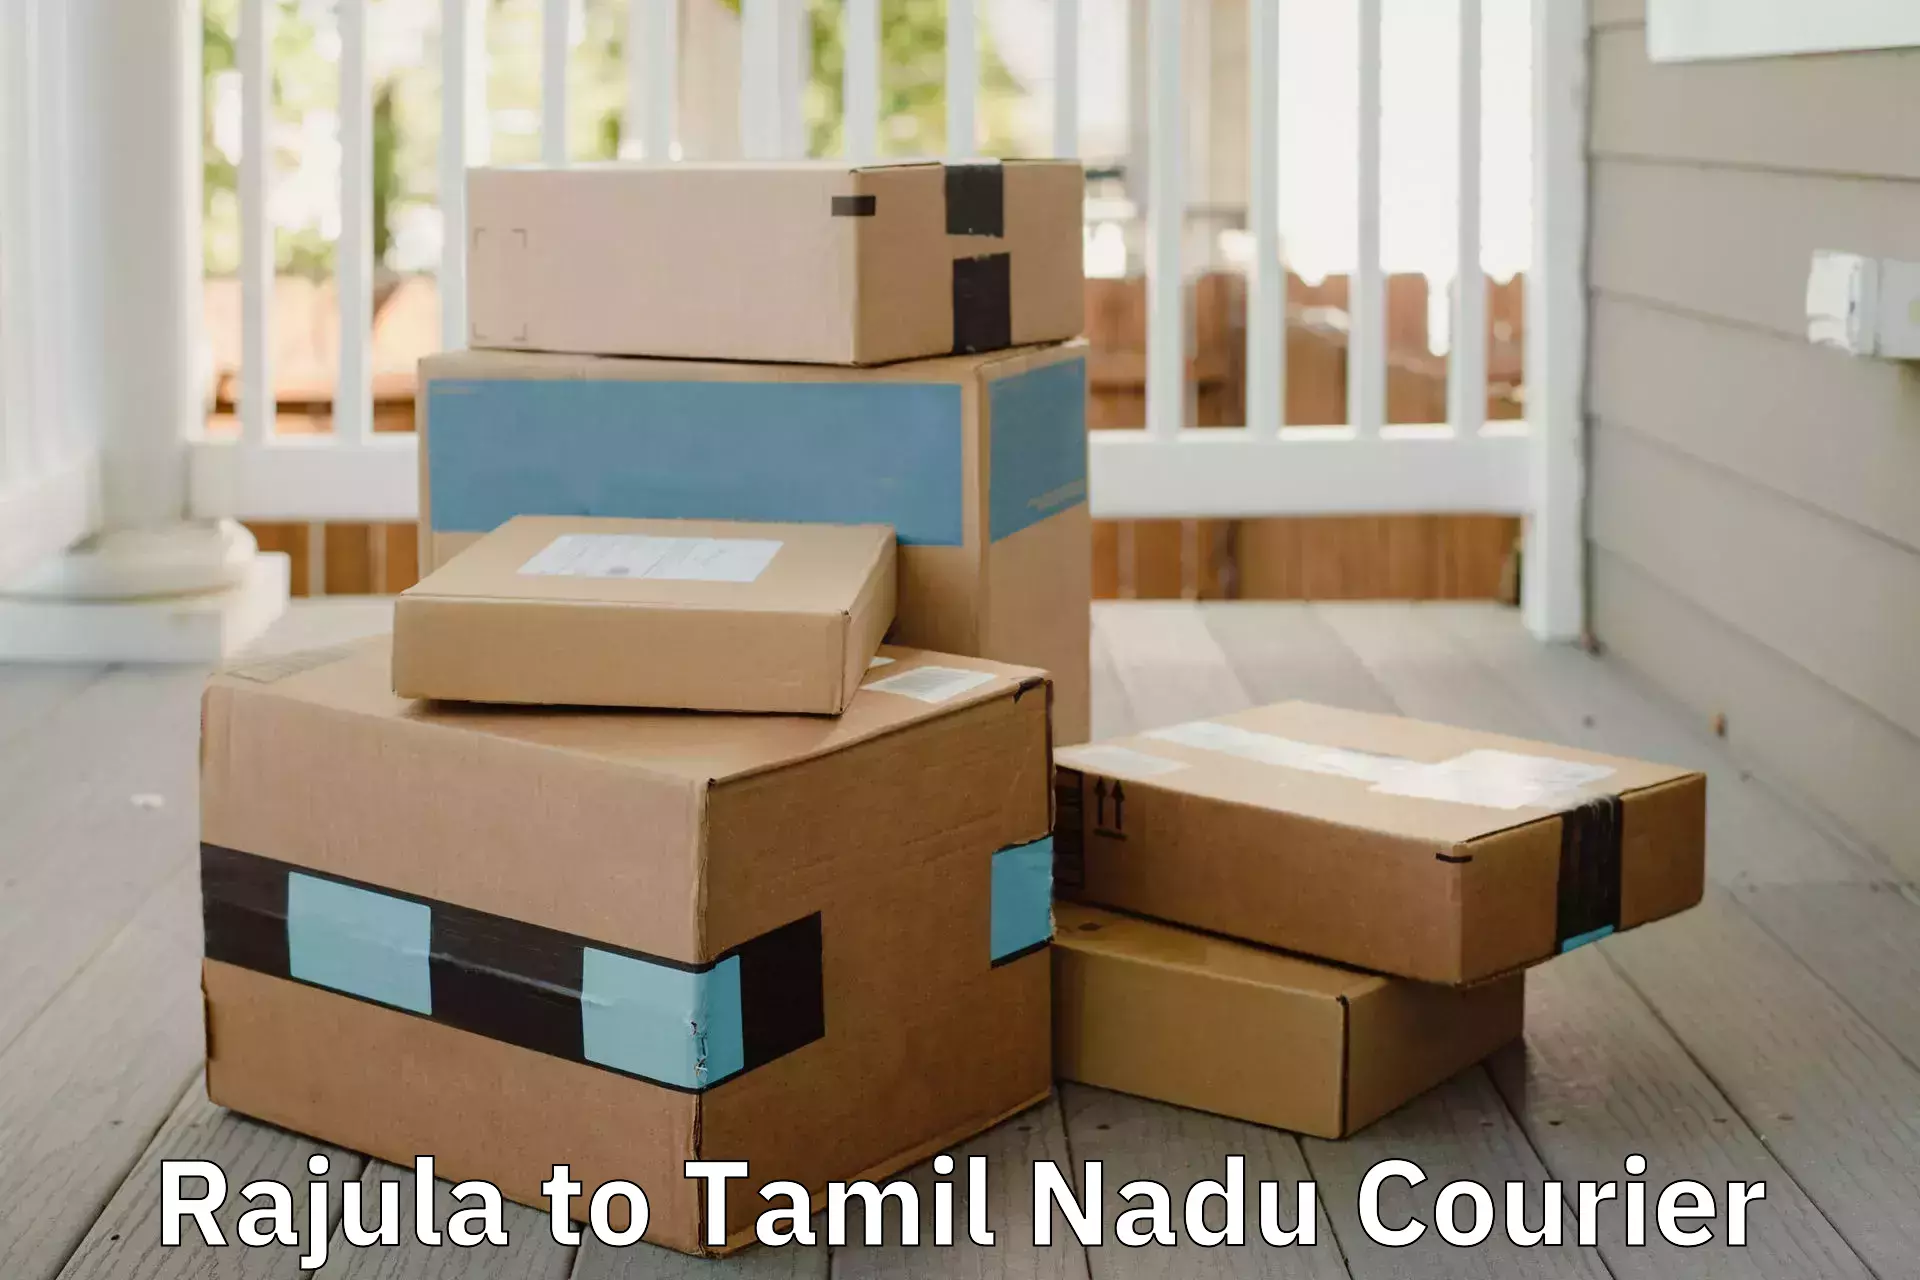 Trusted furniture transport Rajula to Tamil Nadu